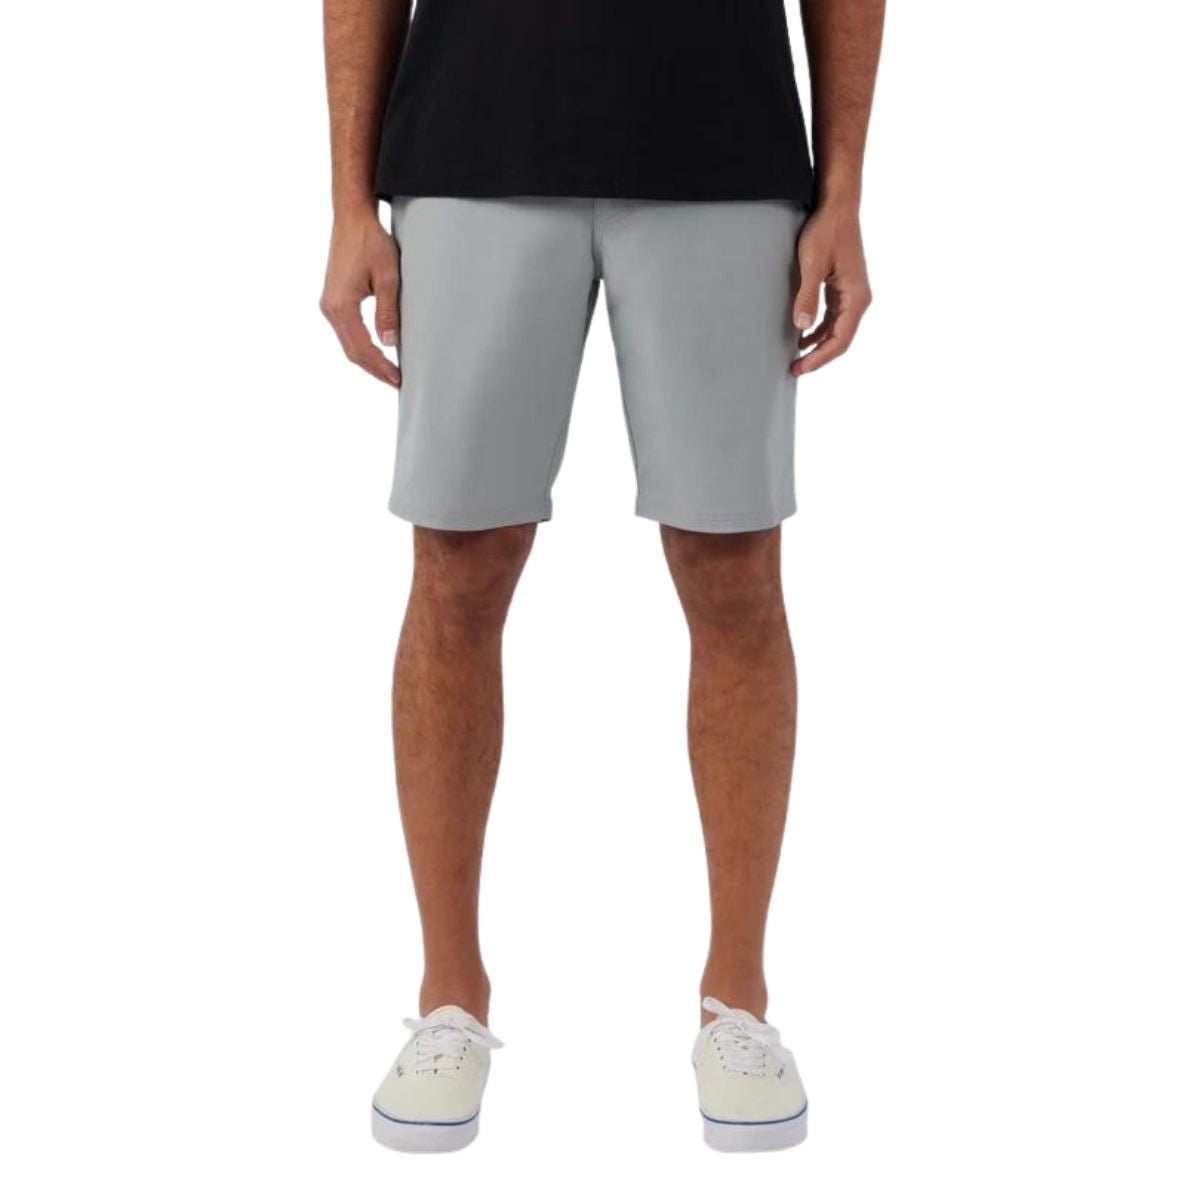 O'Neill Stockton 20" Hybrid Shorts in Light Grey - BoardCo